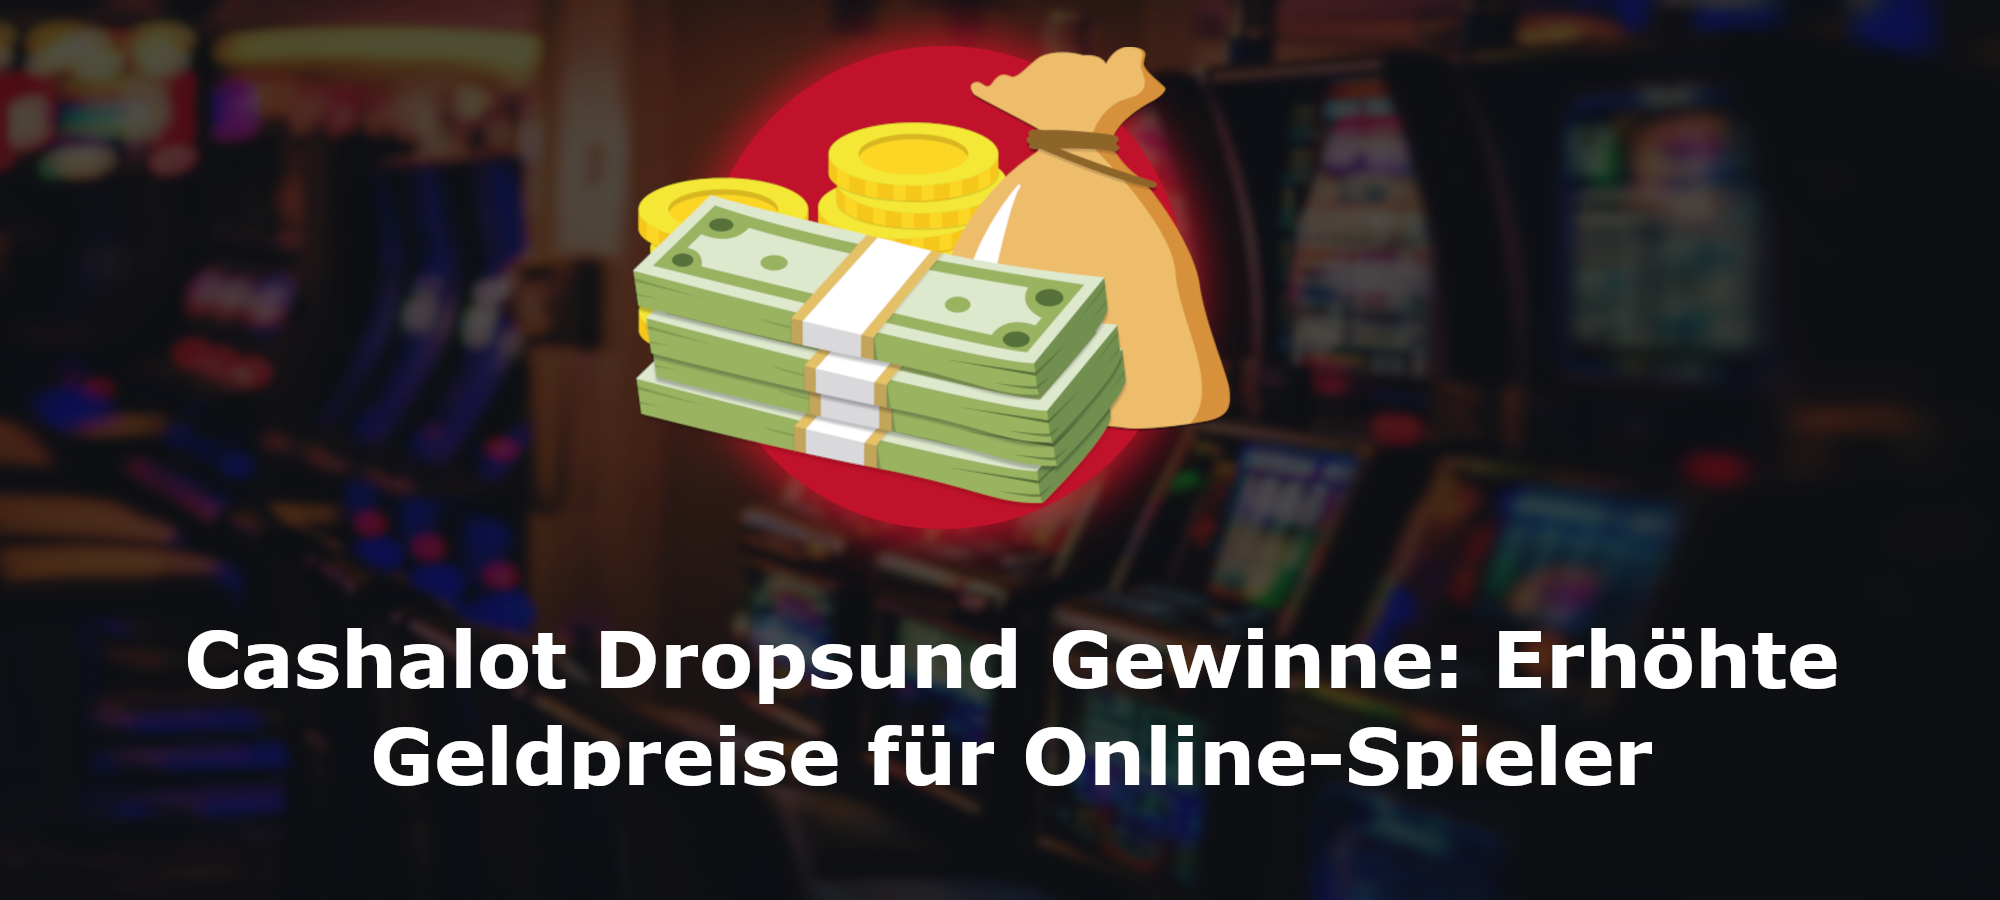 <strong>Cashalot Dropsund Gewinne: Erhöhte Geldpreise für Online-Spieler</strong>